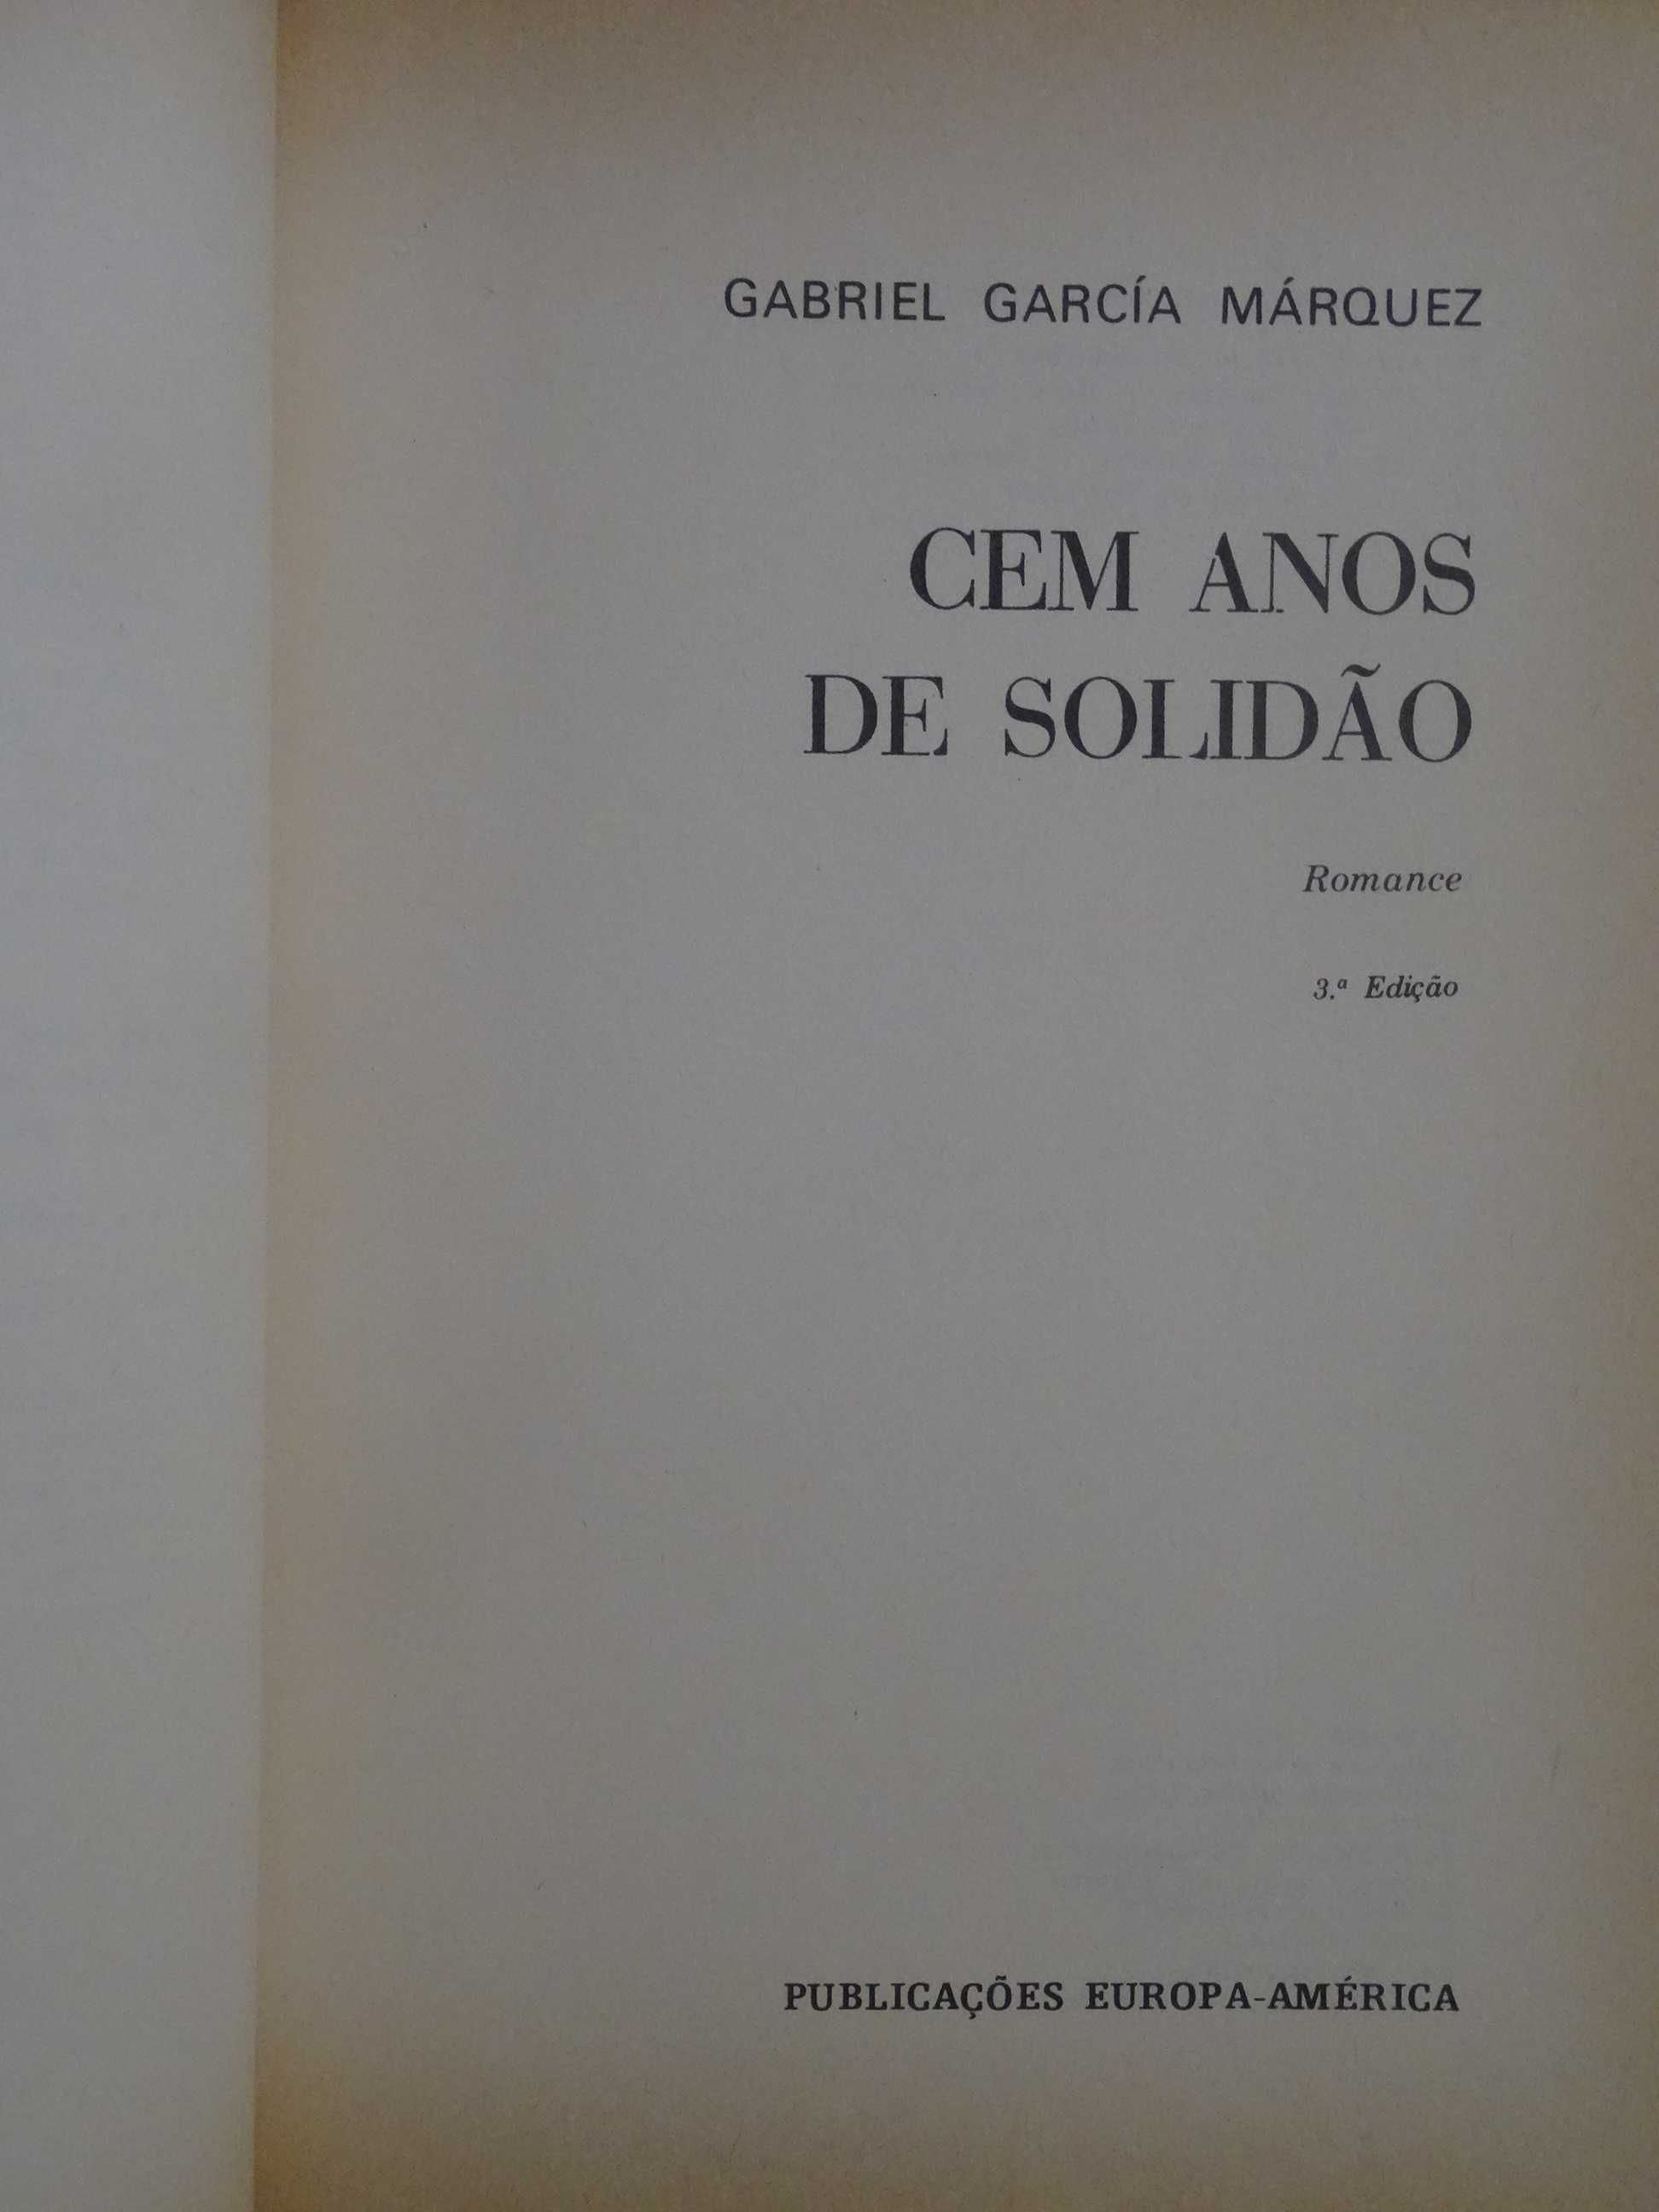 Cem Anos de Solidão
de Gabriel García Márquez